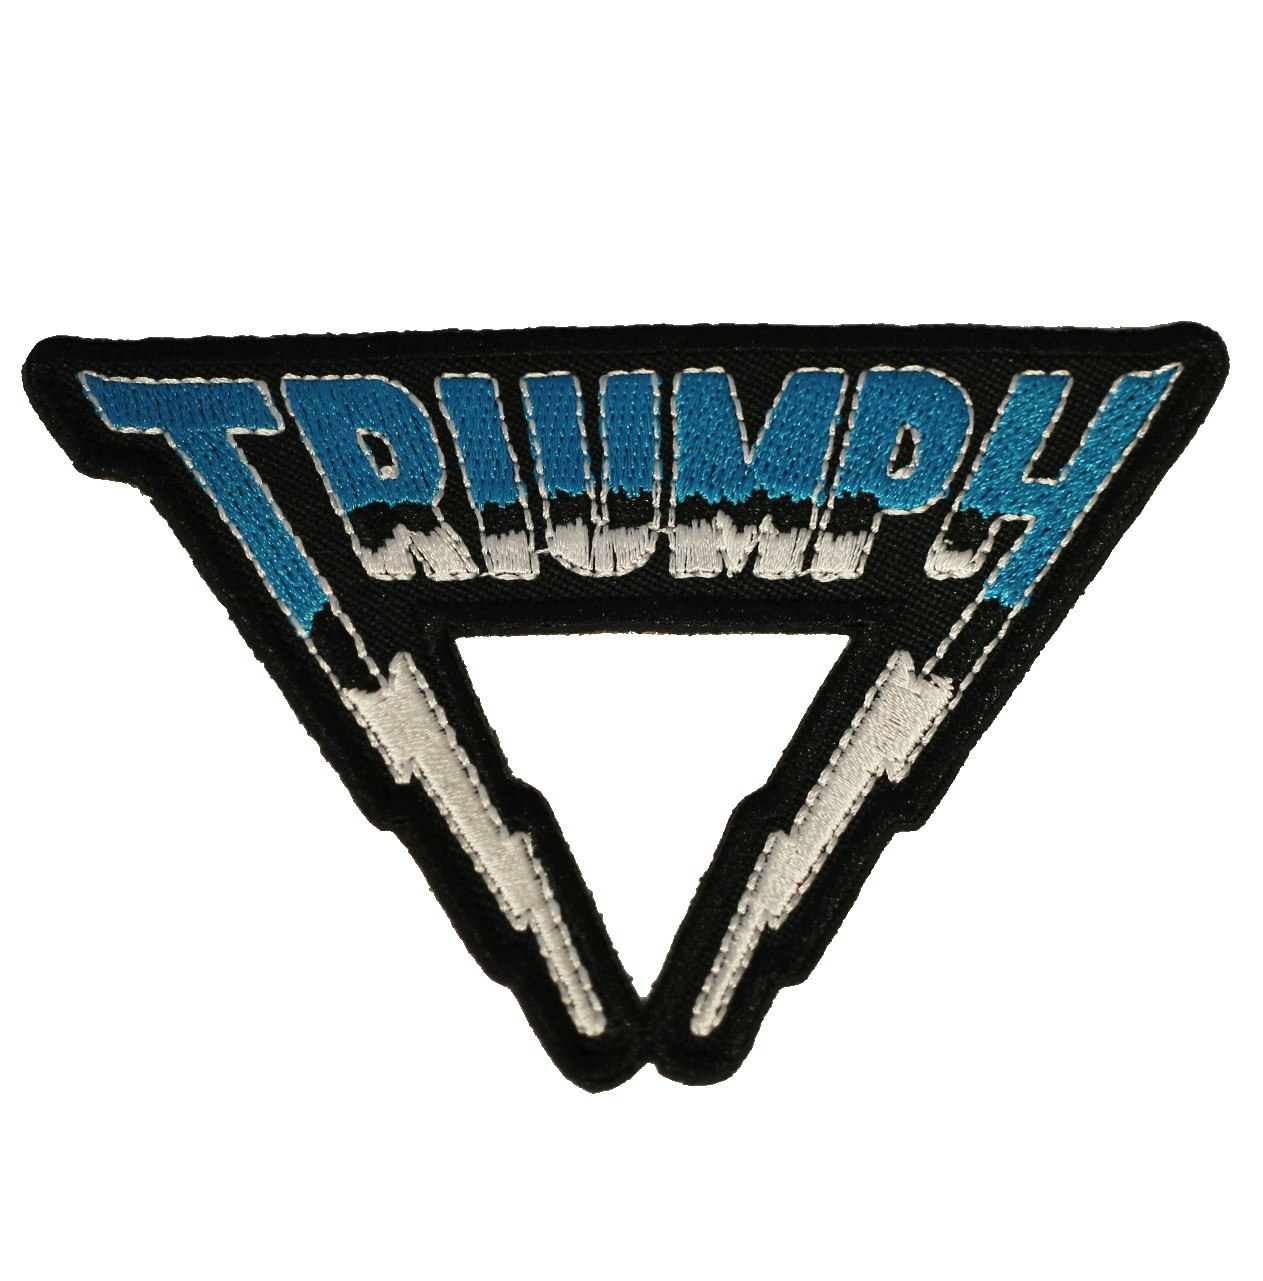 Triumph logo patch